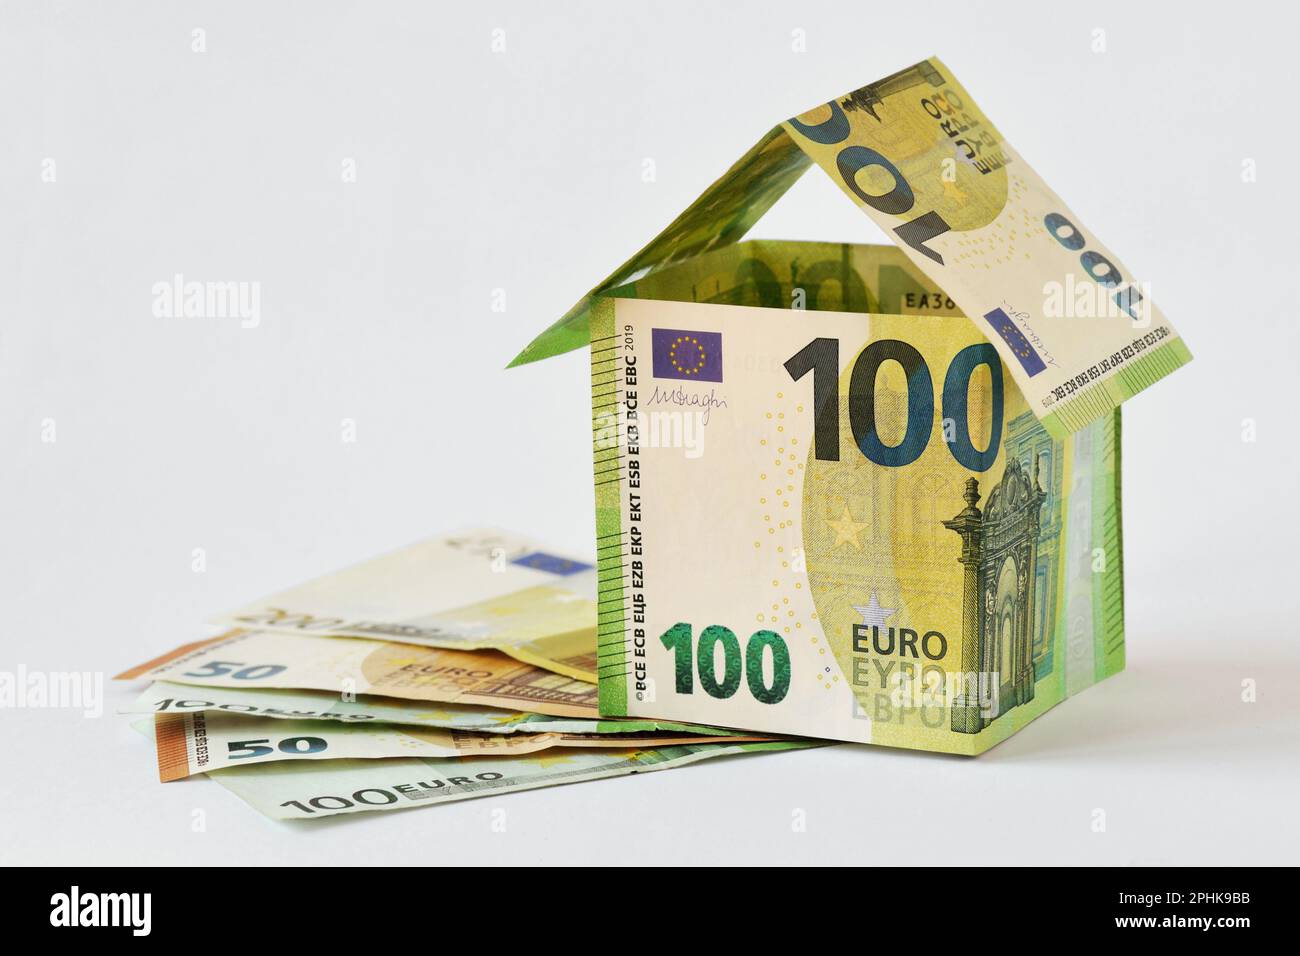 Haus aus Euro-Banknoten auf weißem Hintergrund - Konzept von Baubonus, Immobilieninvestitionen, Hypotheken und Hausversicherung Stockfoto